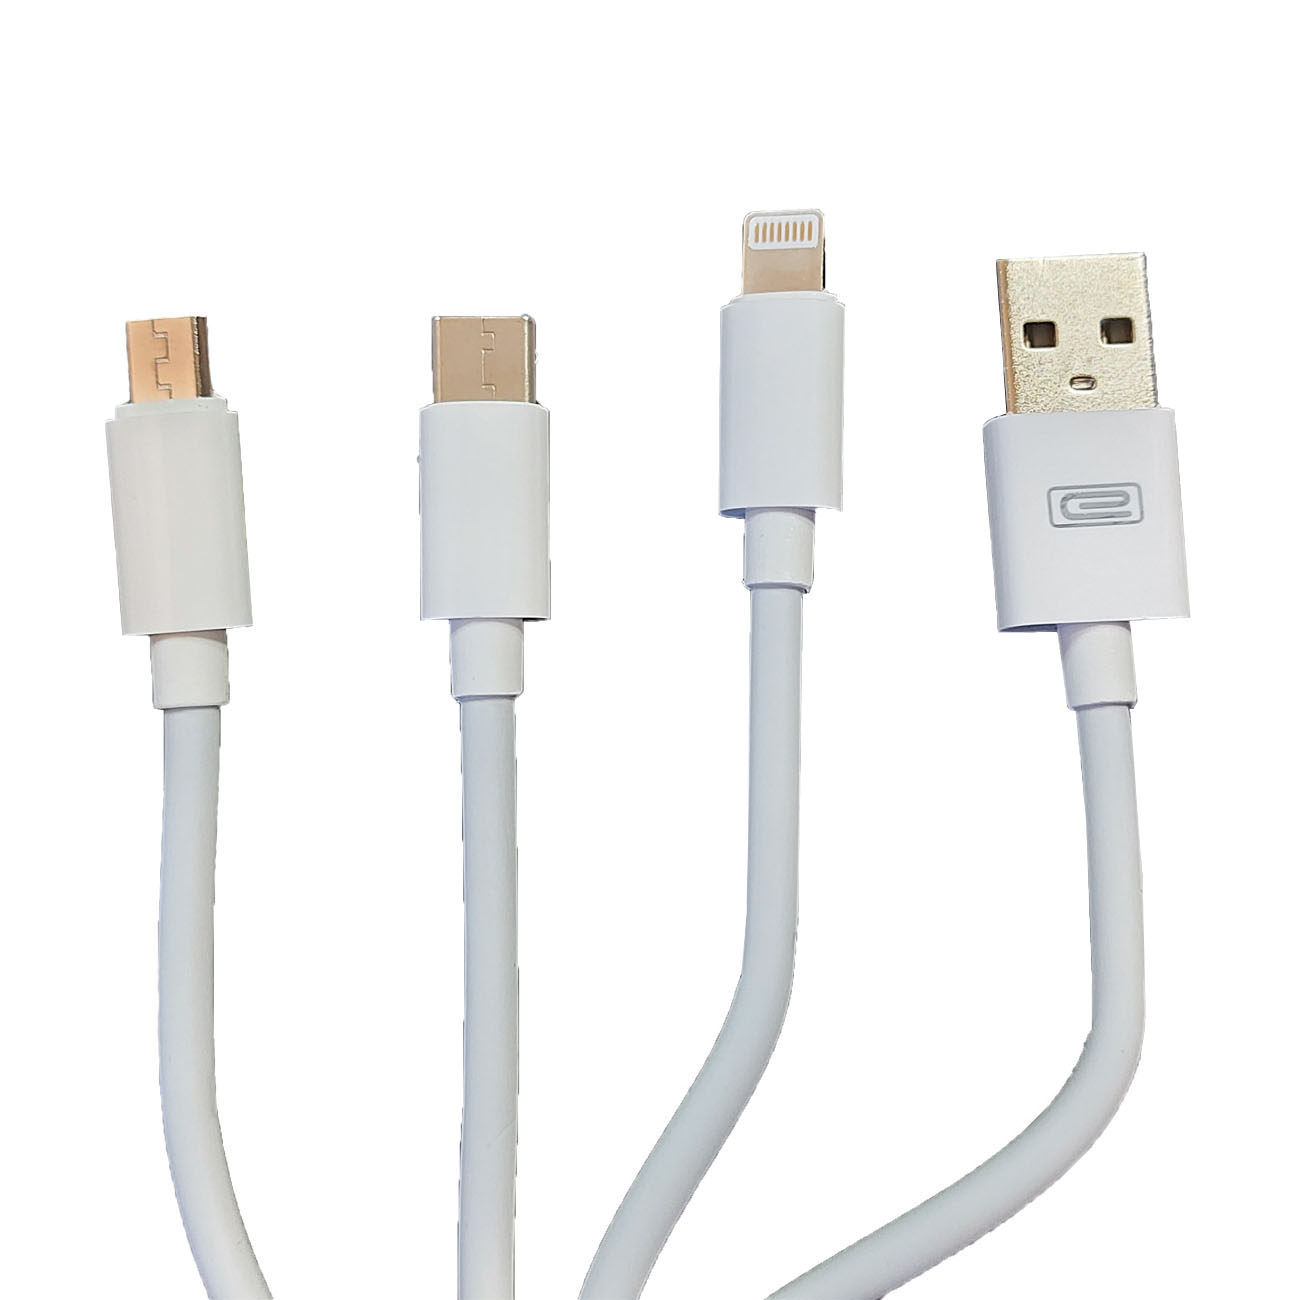 کابل تبدیل USB به USB-C /microUSB/ لایتنینگ ارلدام مدل EC-IMC018 طول 1.2 متر